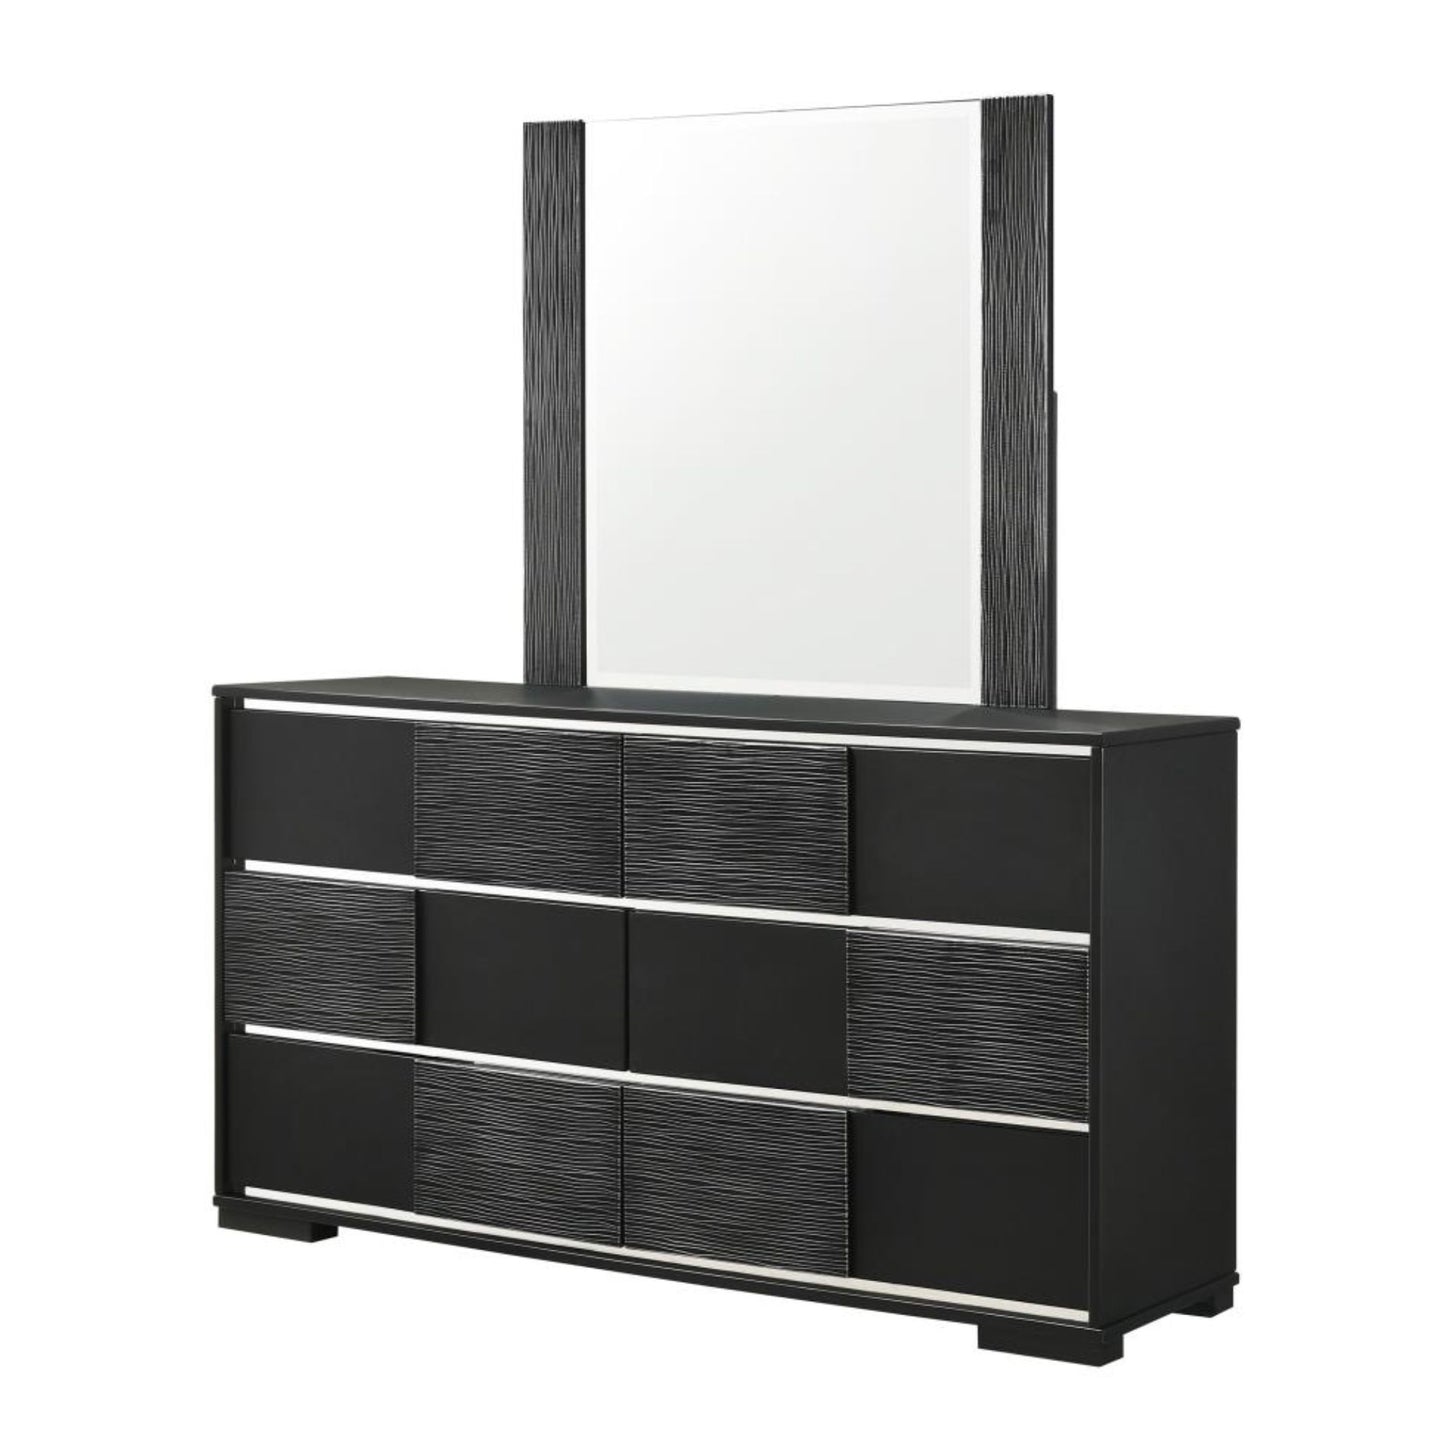 BLACKTOFT 6-drawer Dresser with Mirror